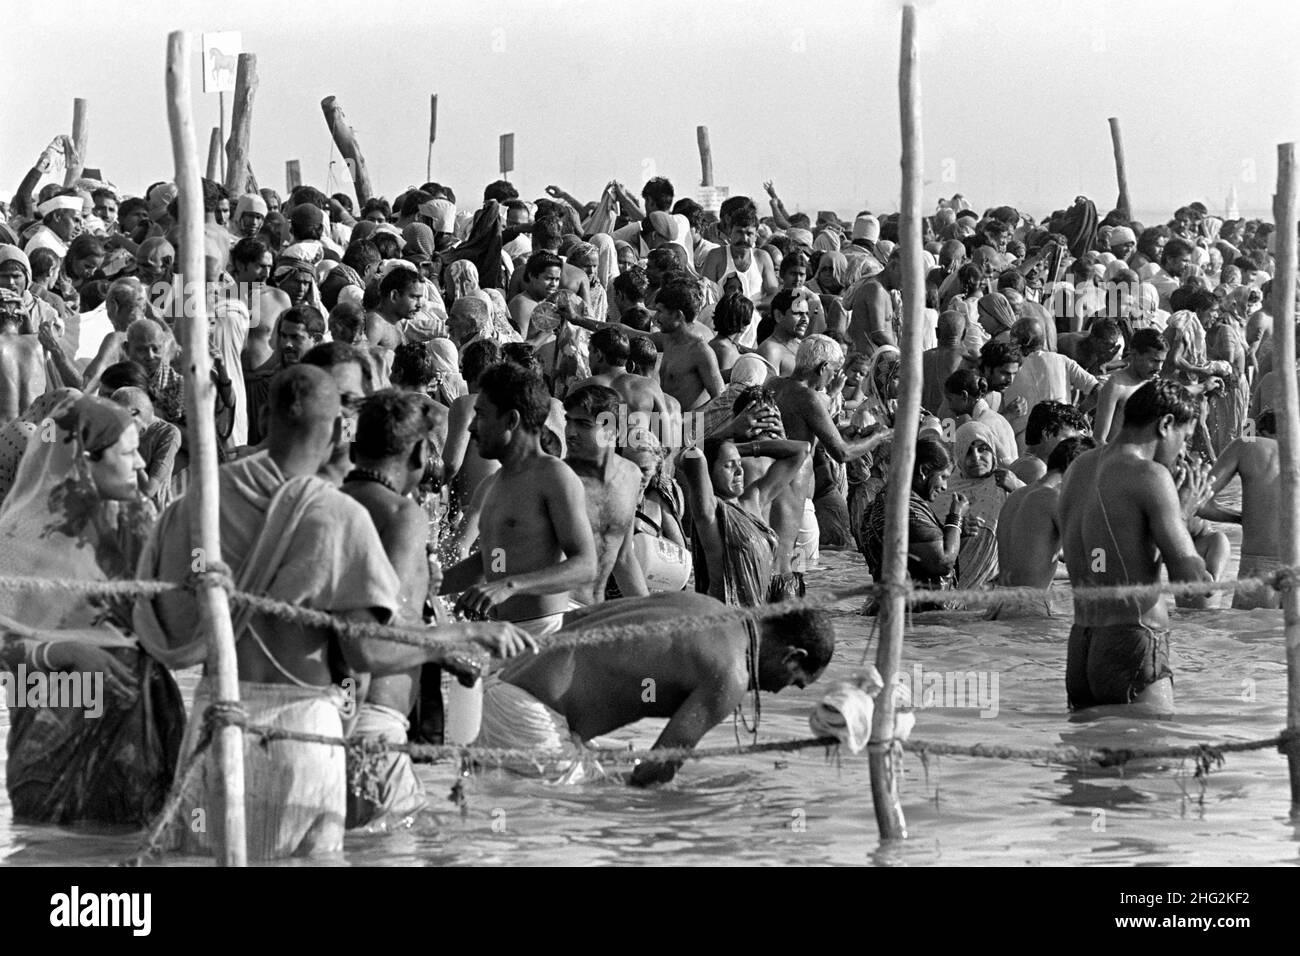 Indische Pilger führen rituelles Baden am Zusammenfluss des Ganges und des Yamuna Flusses auf dem Höhepunkt des Kumbh Mela Festivals am 6. Februar 1989 in Allahabad, Indien, durch. Das sechswöchige Festival findet alle 12th Jahre statt und zieht Millionen von Hindu-Pilgern an. Stockfoto